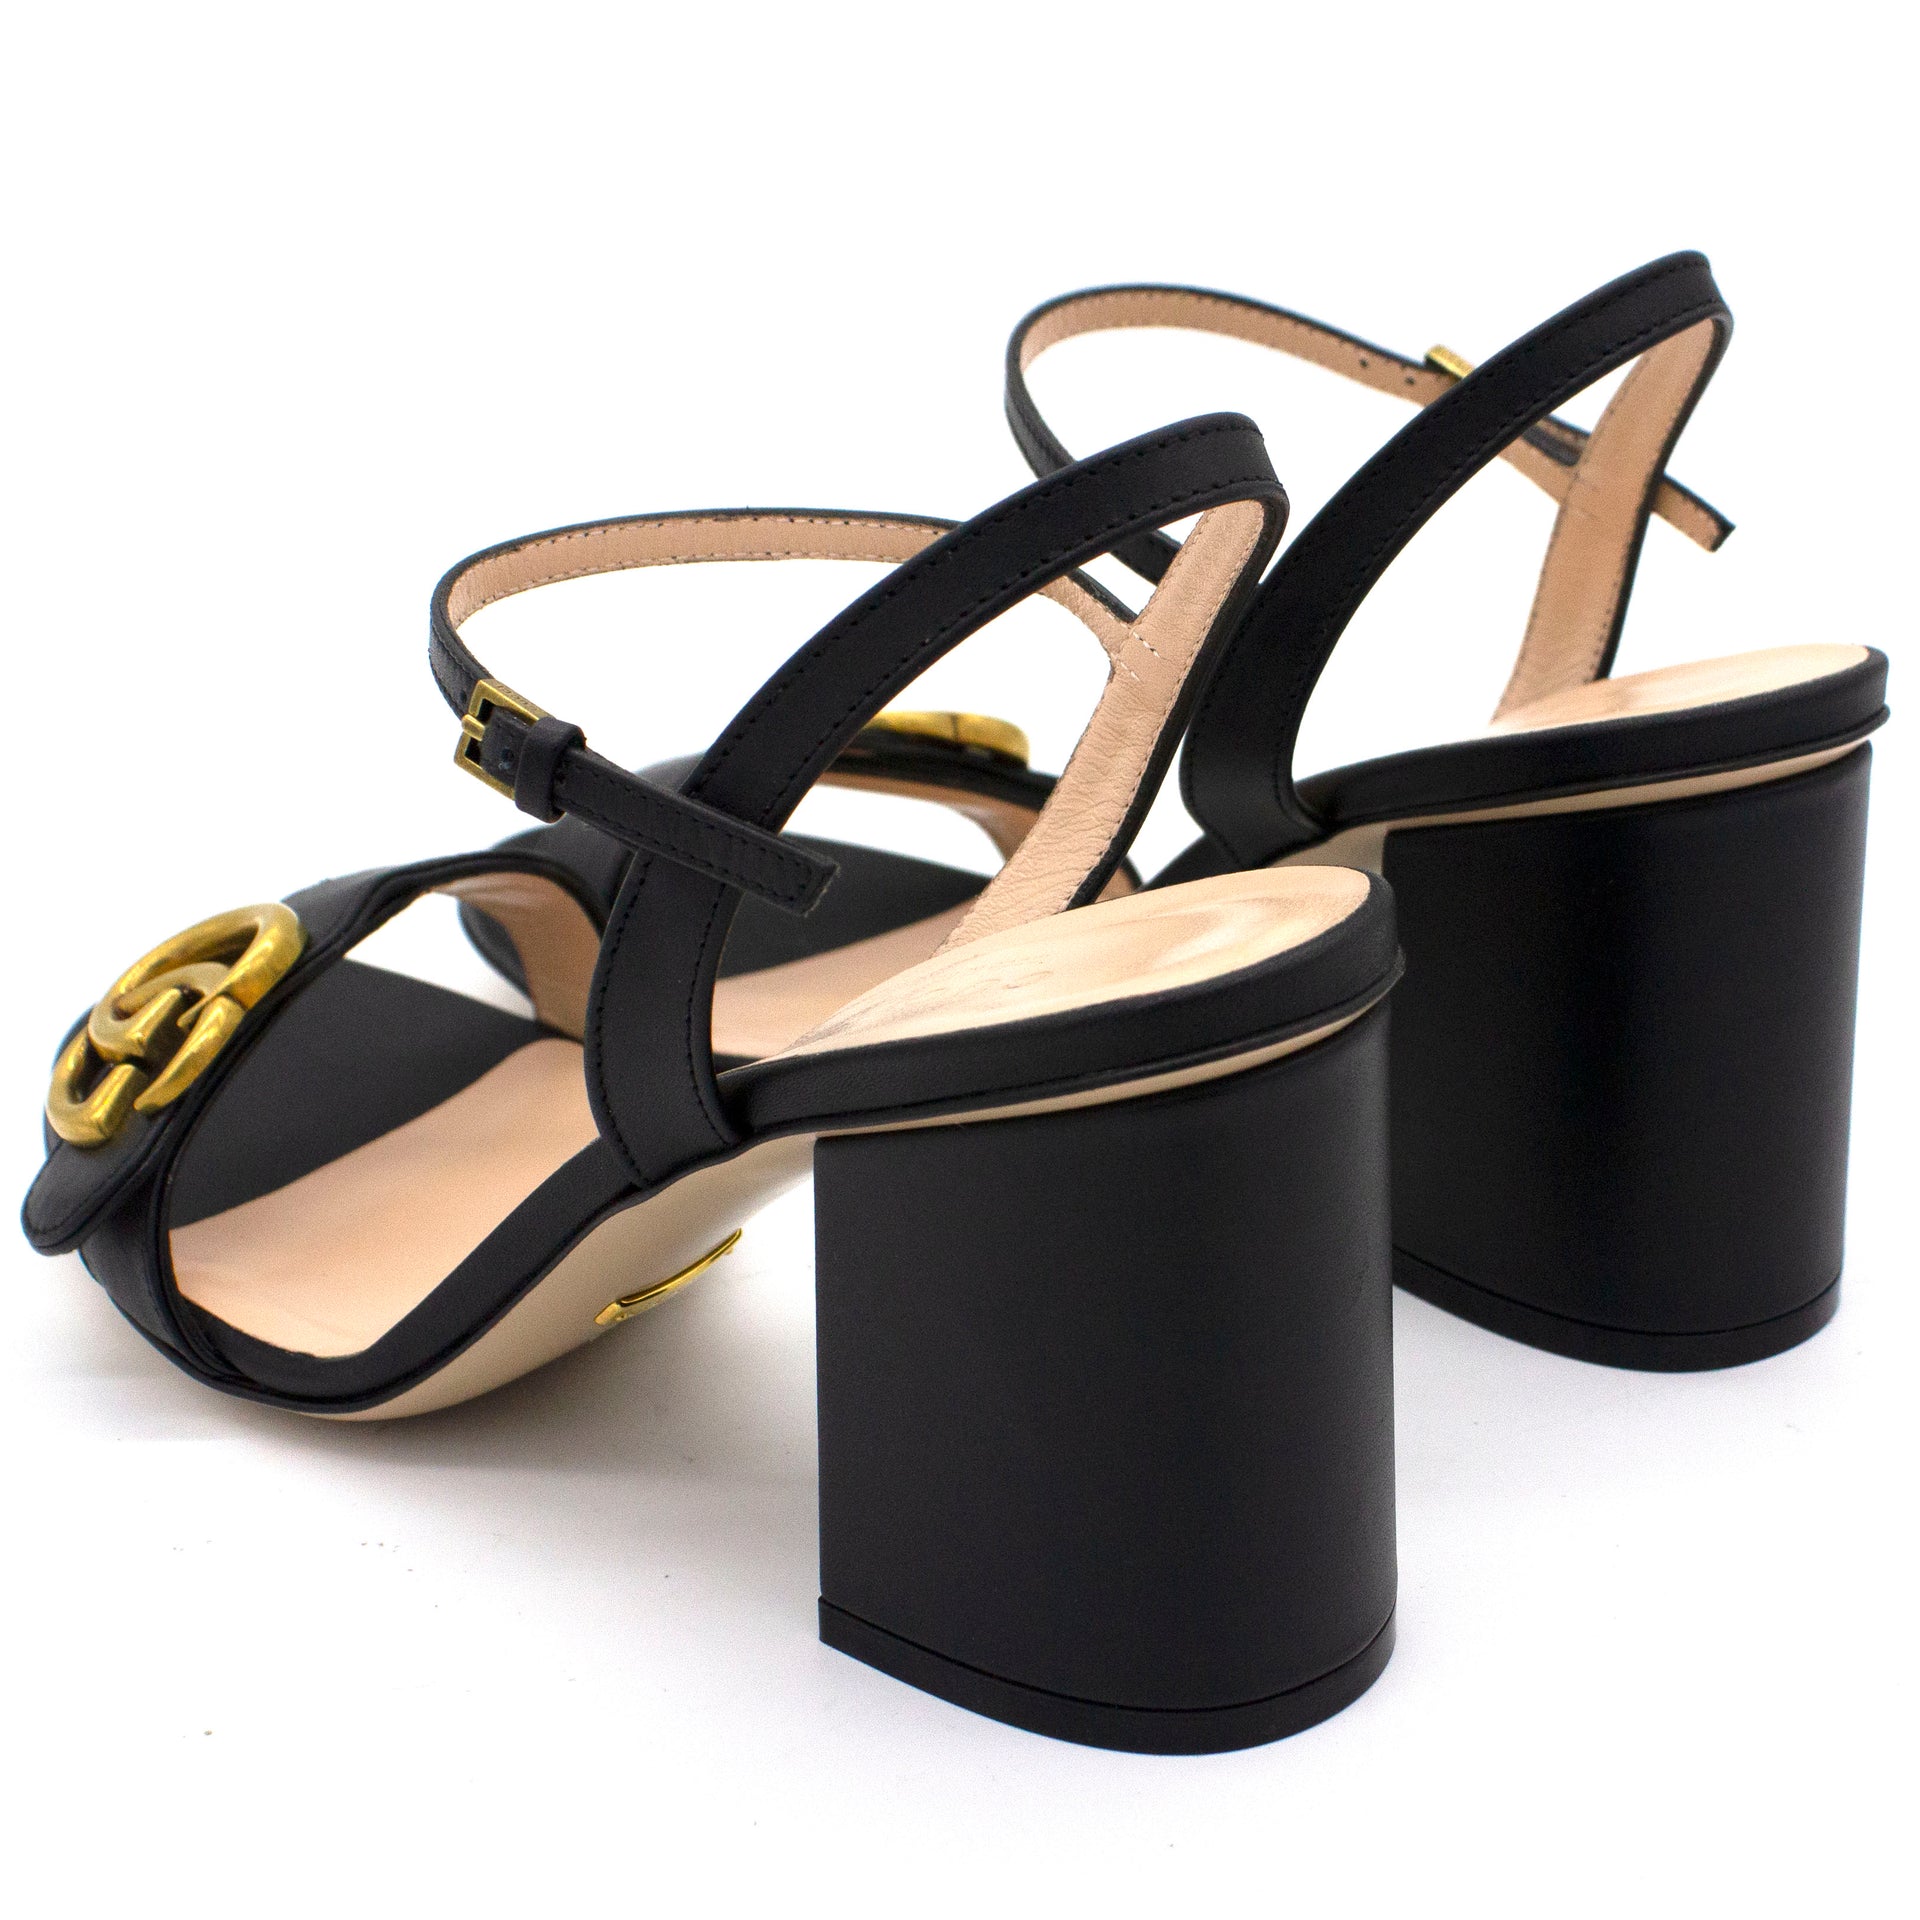 Marmont Leather mid-heel sandal